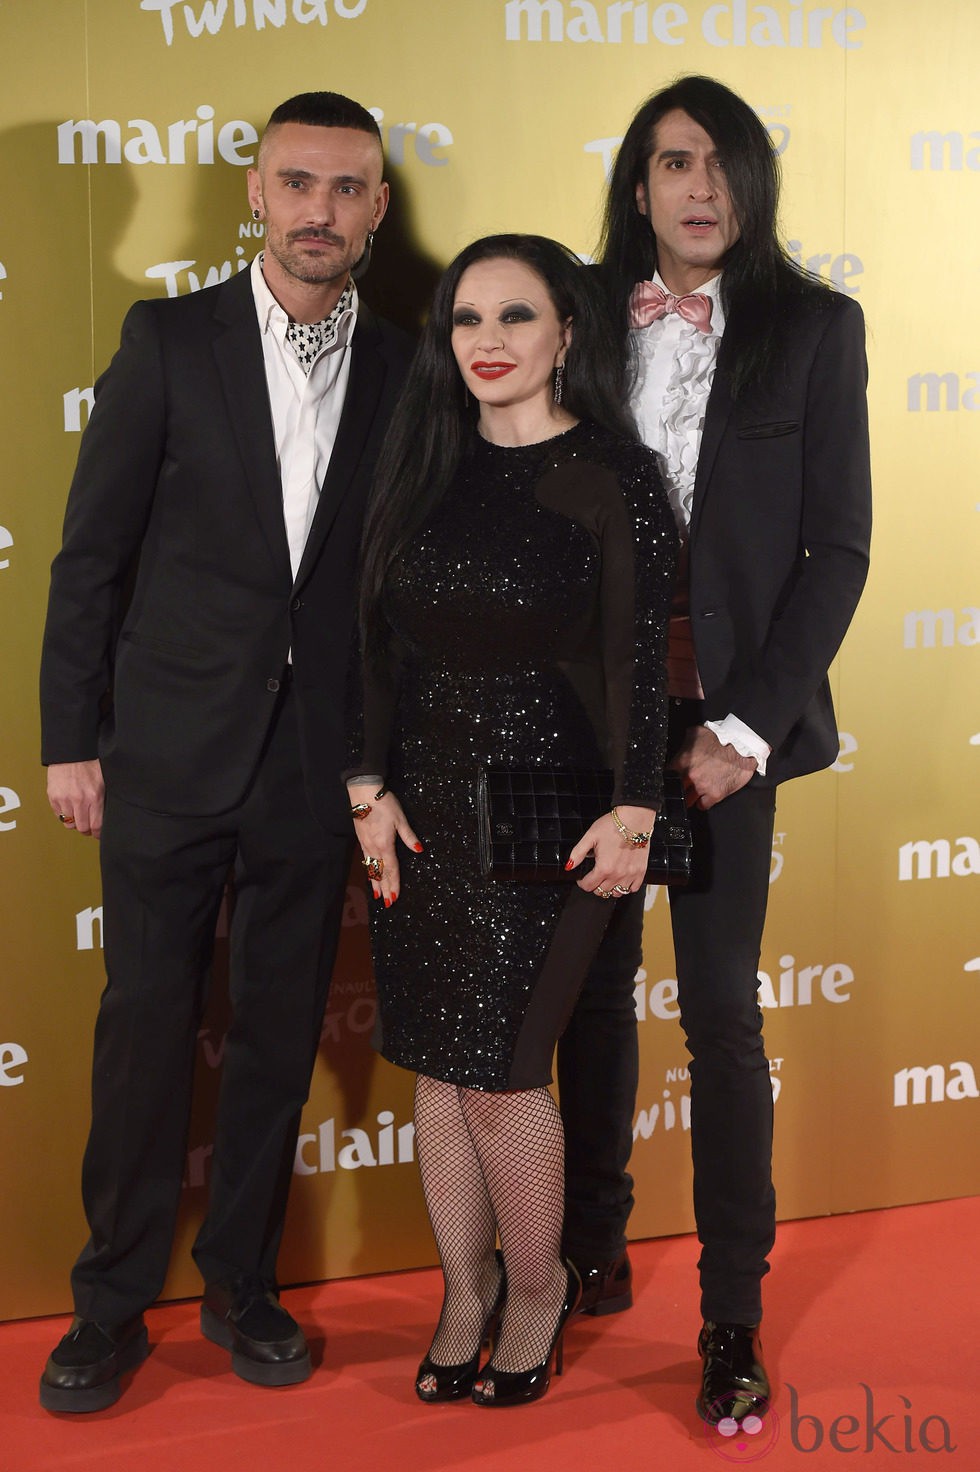 Alaska, Mario Vaquerizo y David Delfín en la entrega de los Premios Prix de la Moda 2014